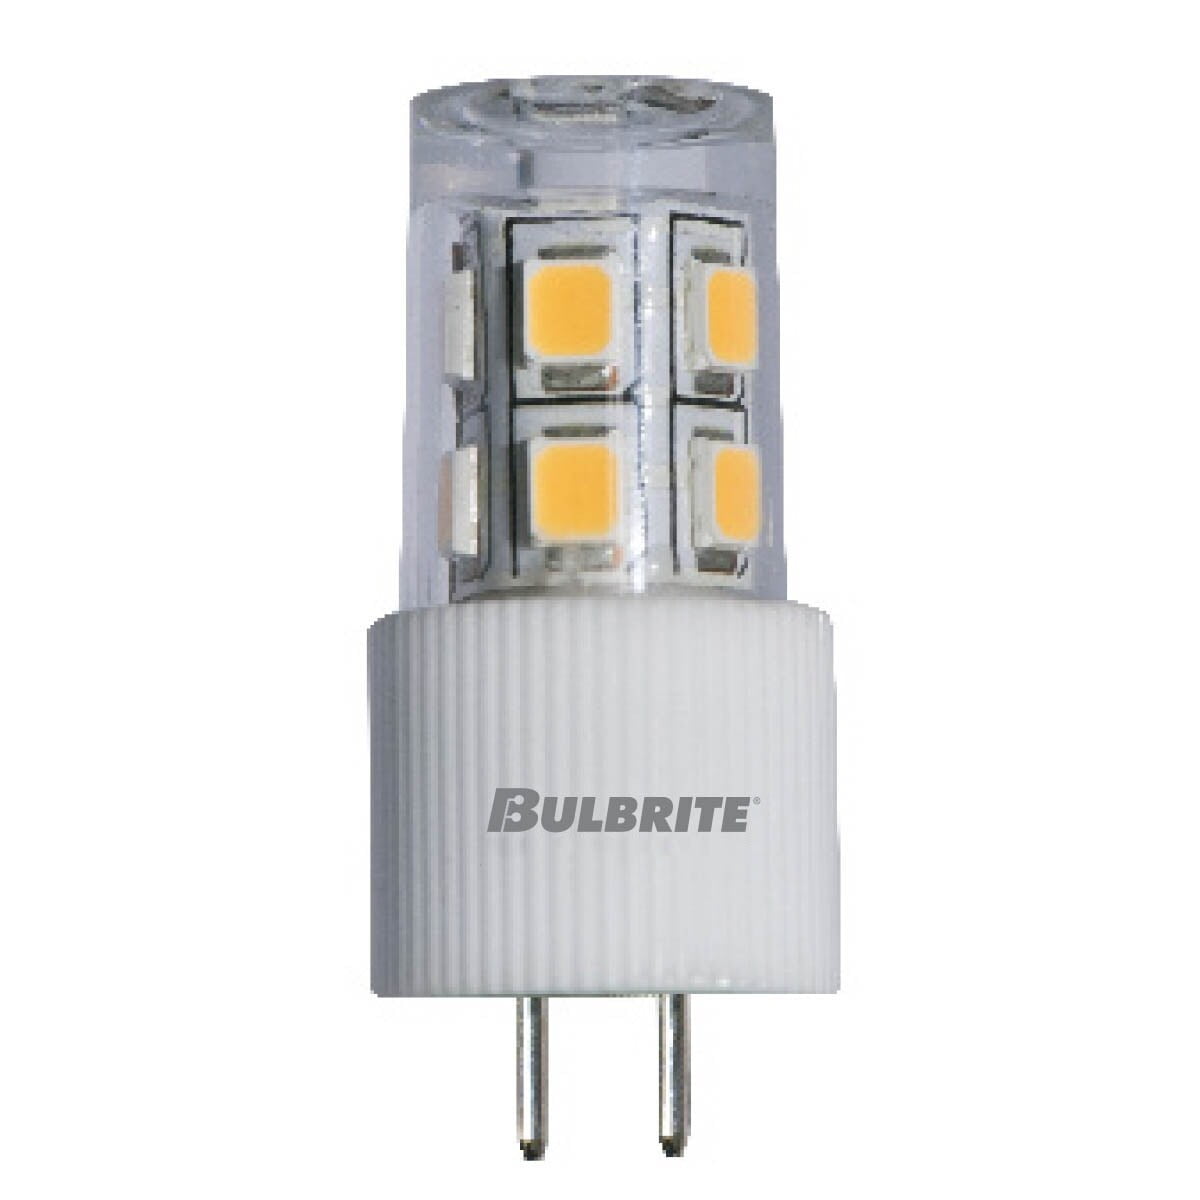 Picture of Bulbrite 861542 2.8 watt 12V Clear WAFER LED Mini Light Bulbs with Bi-Pin G4 Base - 3000K Soft White Light, 280 Lumens - Pack of 3